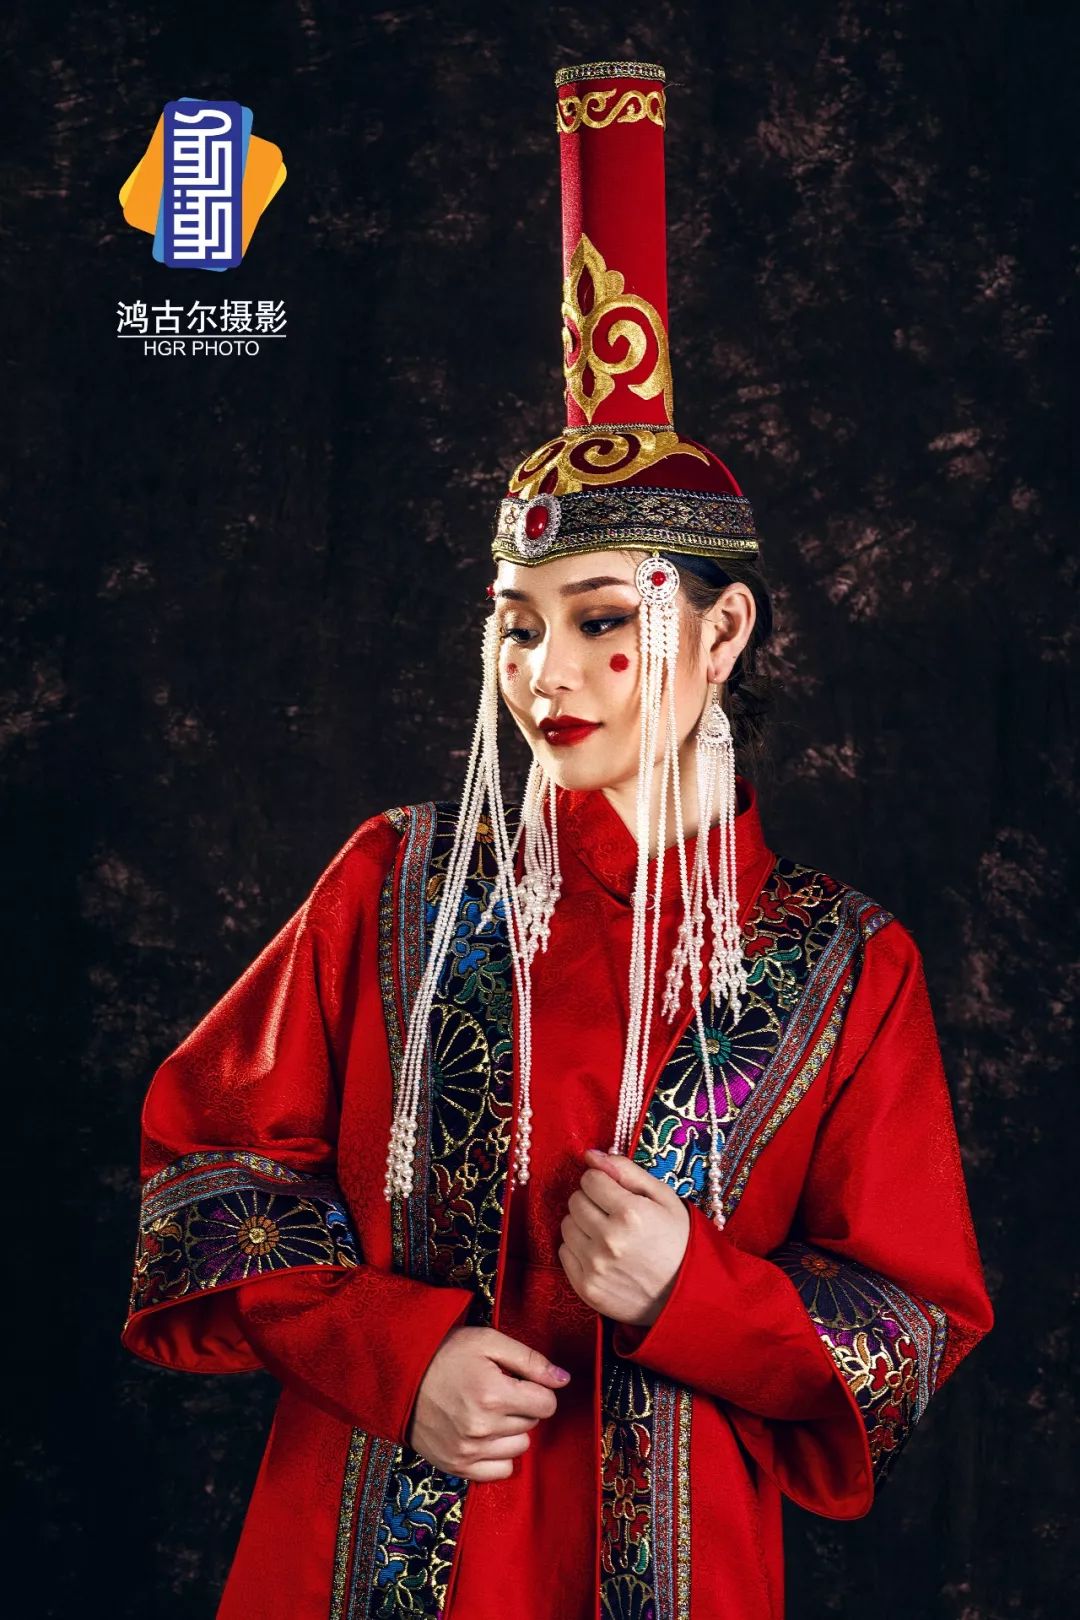 穿蒙古服饰的姑娘，简直太美了....-草原元素---蒙古元素 Mongolia Elements